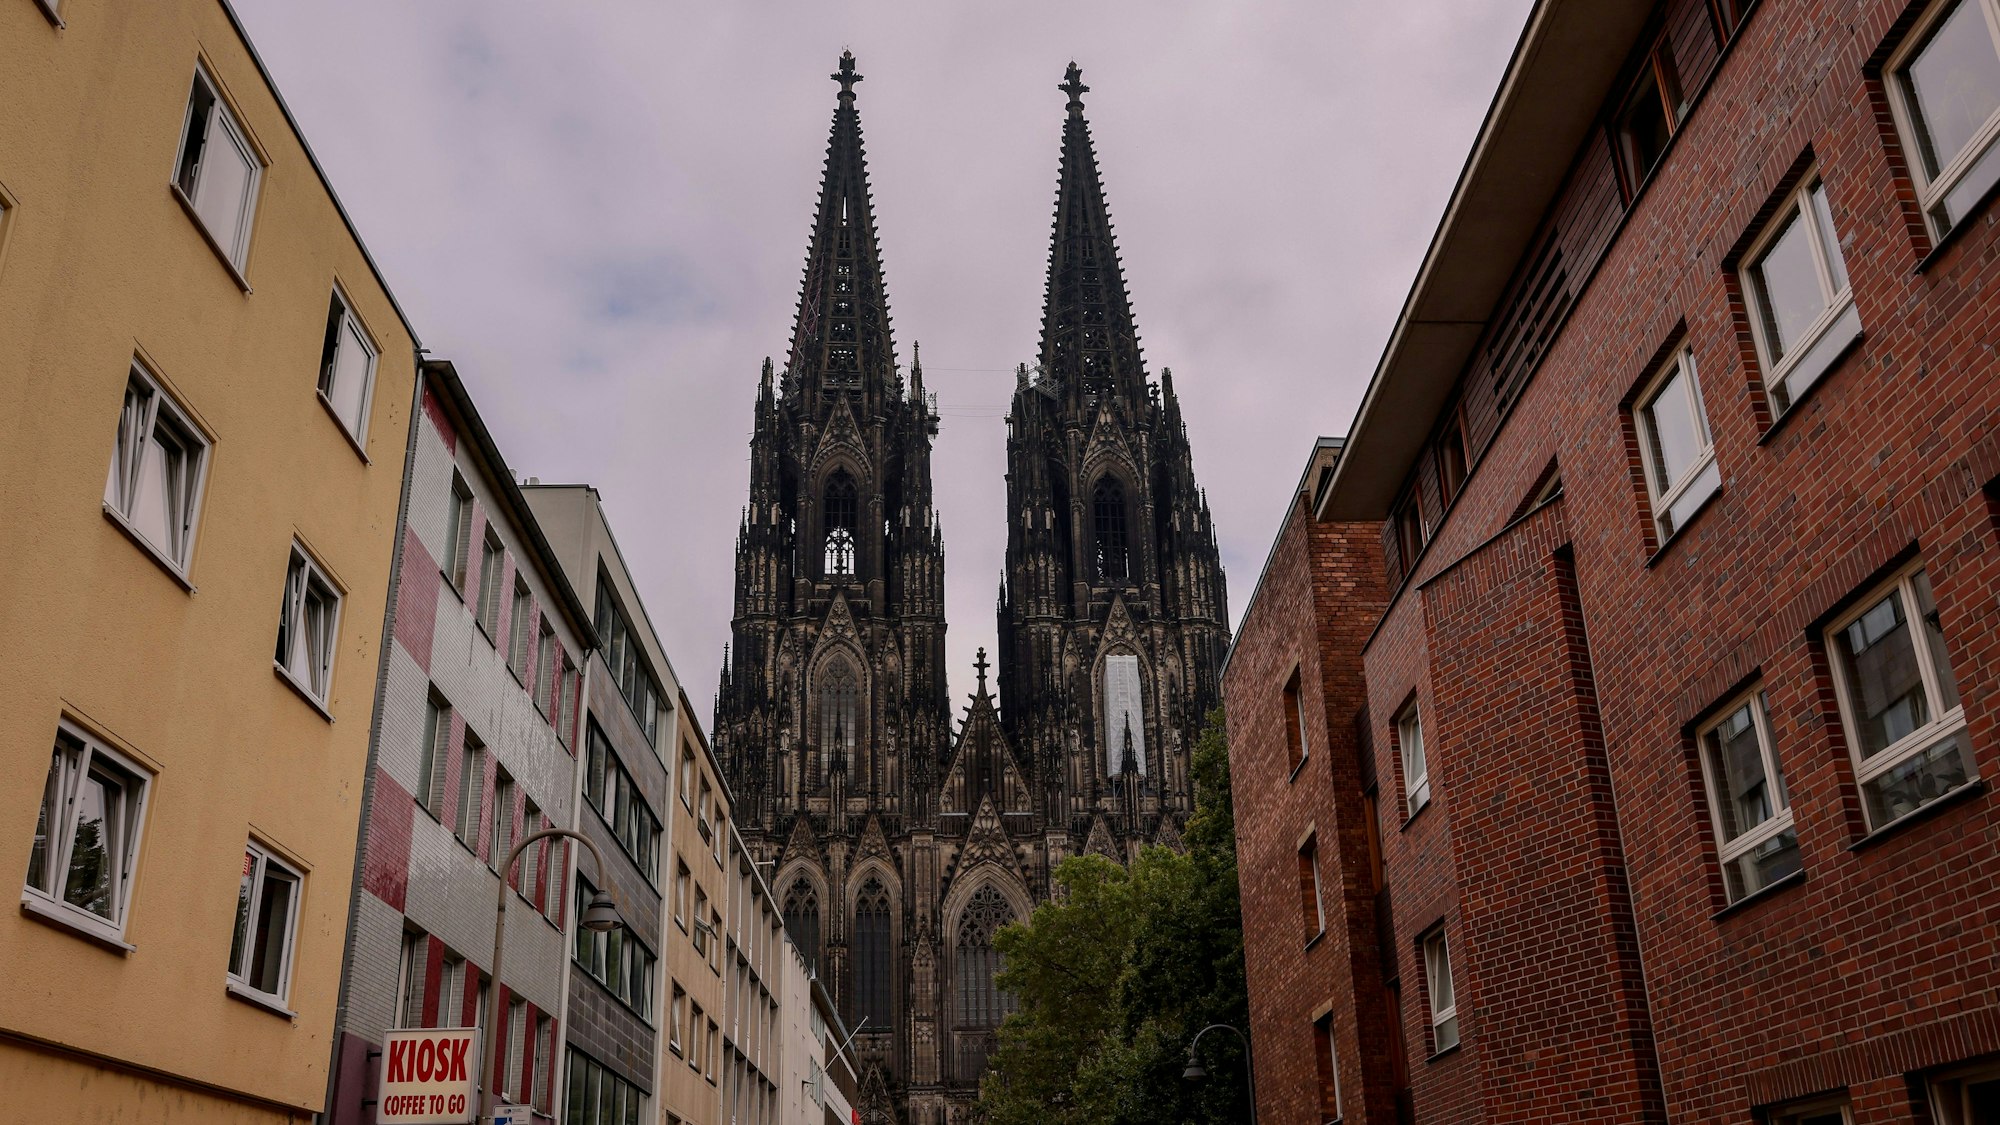 Zu sehen ist der Kölner Dom, eingerahmt von Hausfassaden.